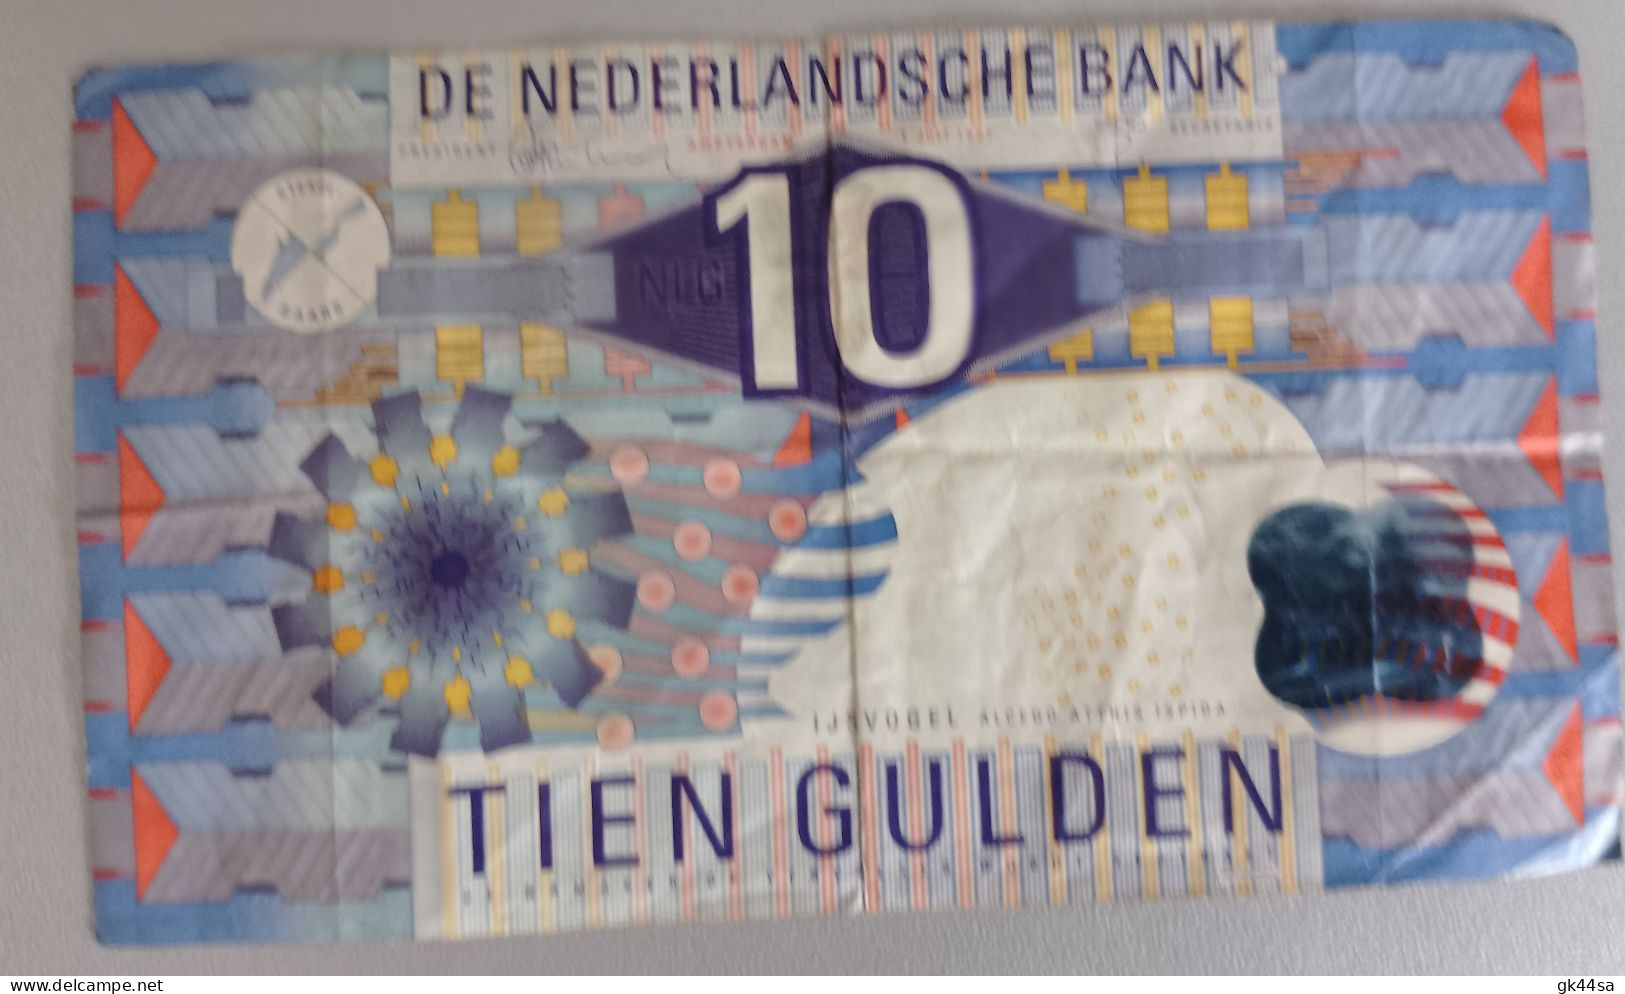 10 TIEN GULDEN - DE NEDERLANDSCHE BANK - AMSTERDAM 1997 - Te Identificeren